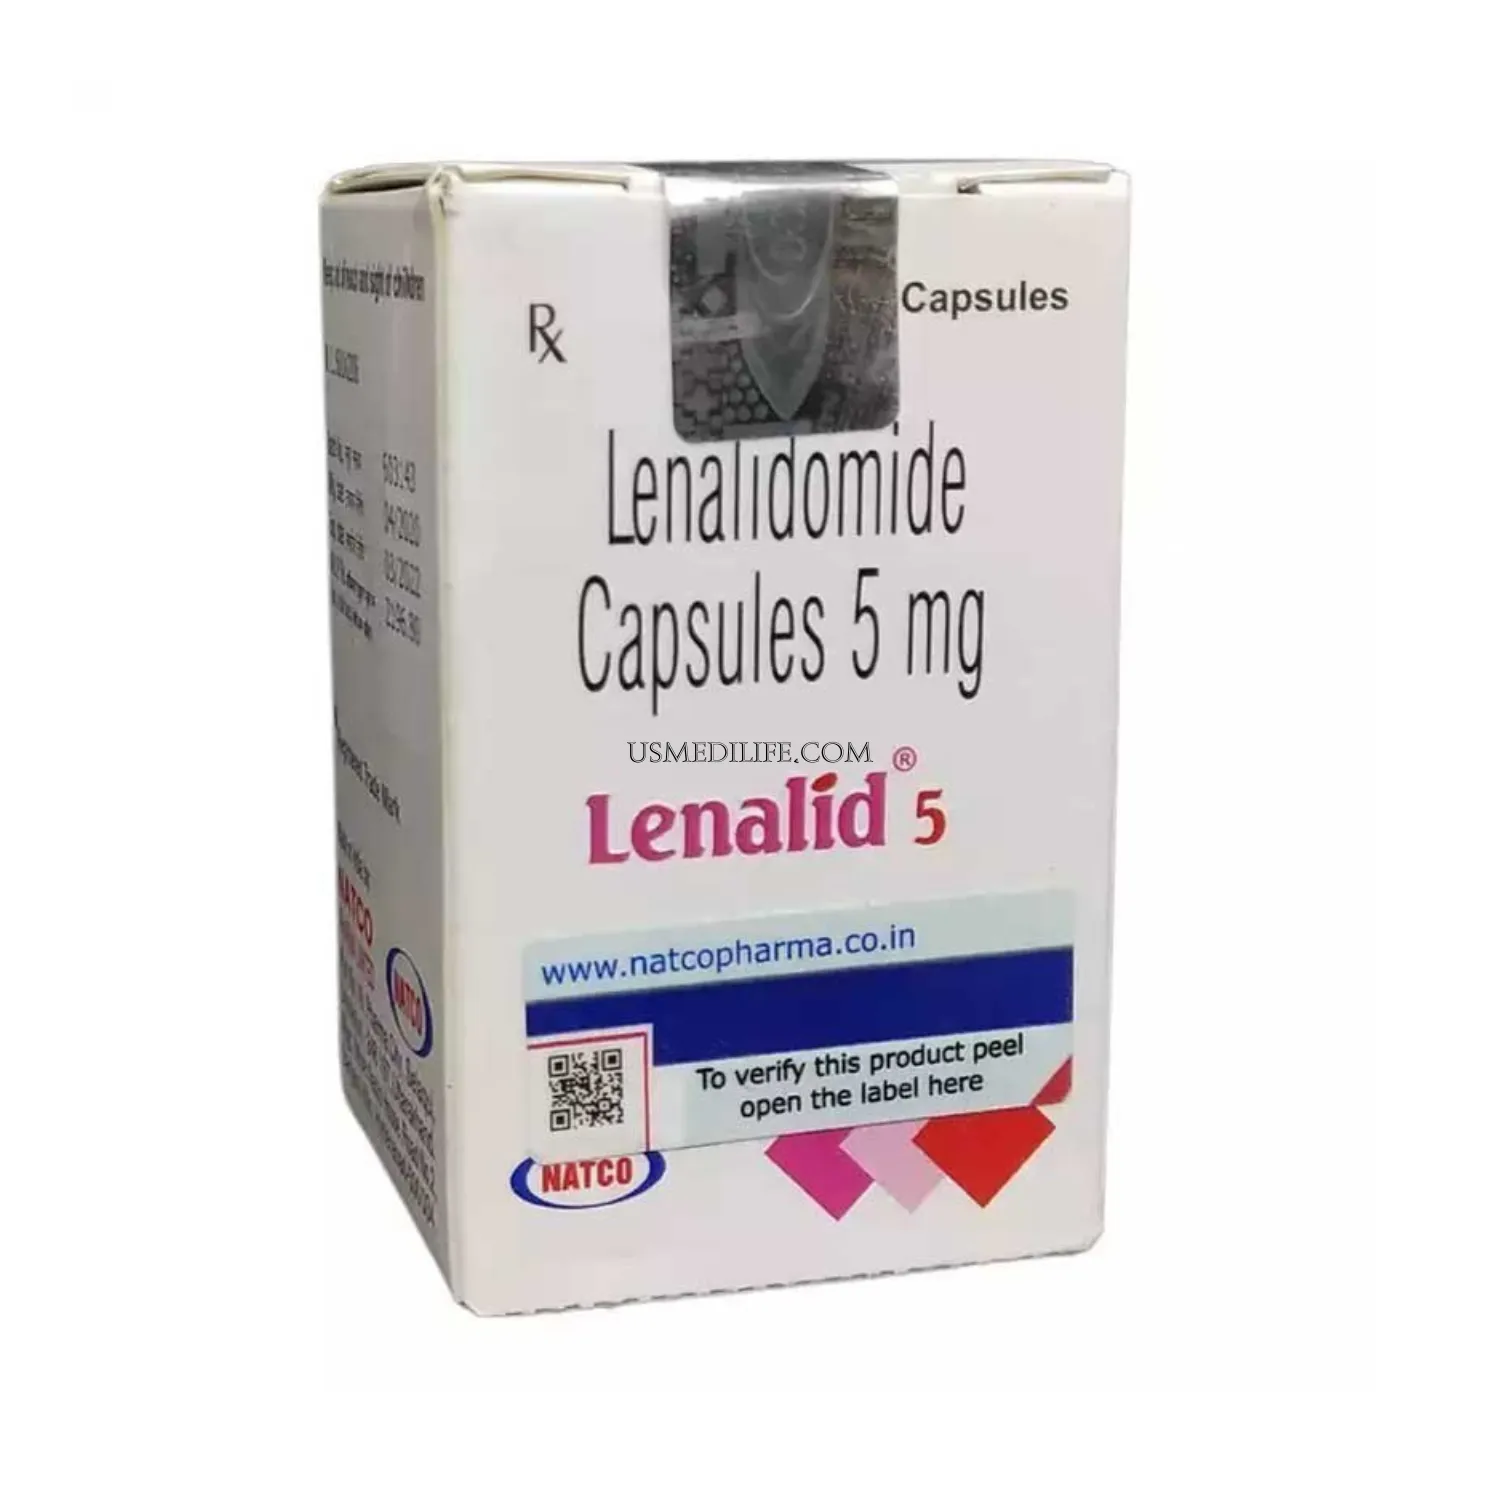 lenalid-5-mg-lenalidomide                    